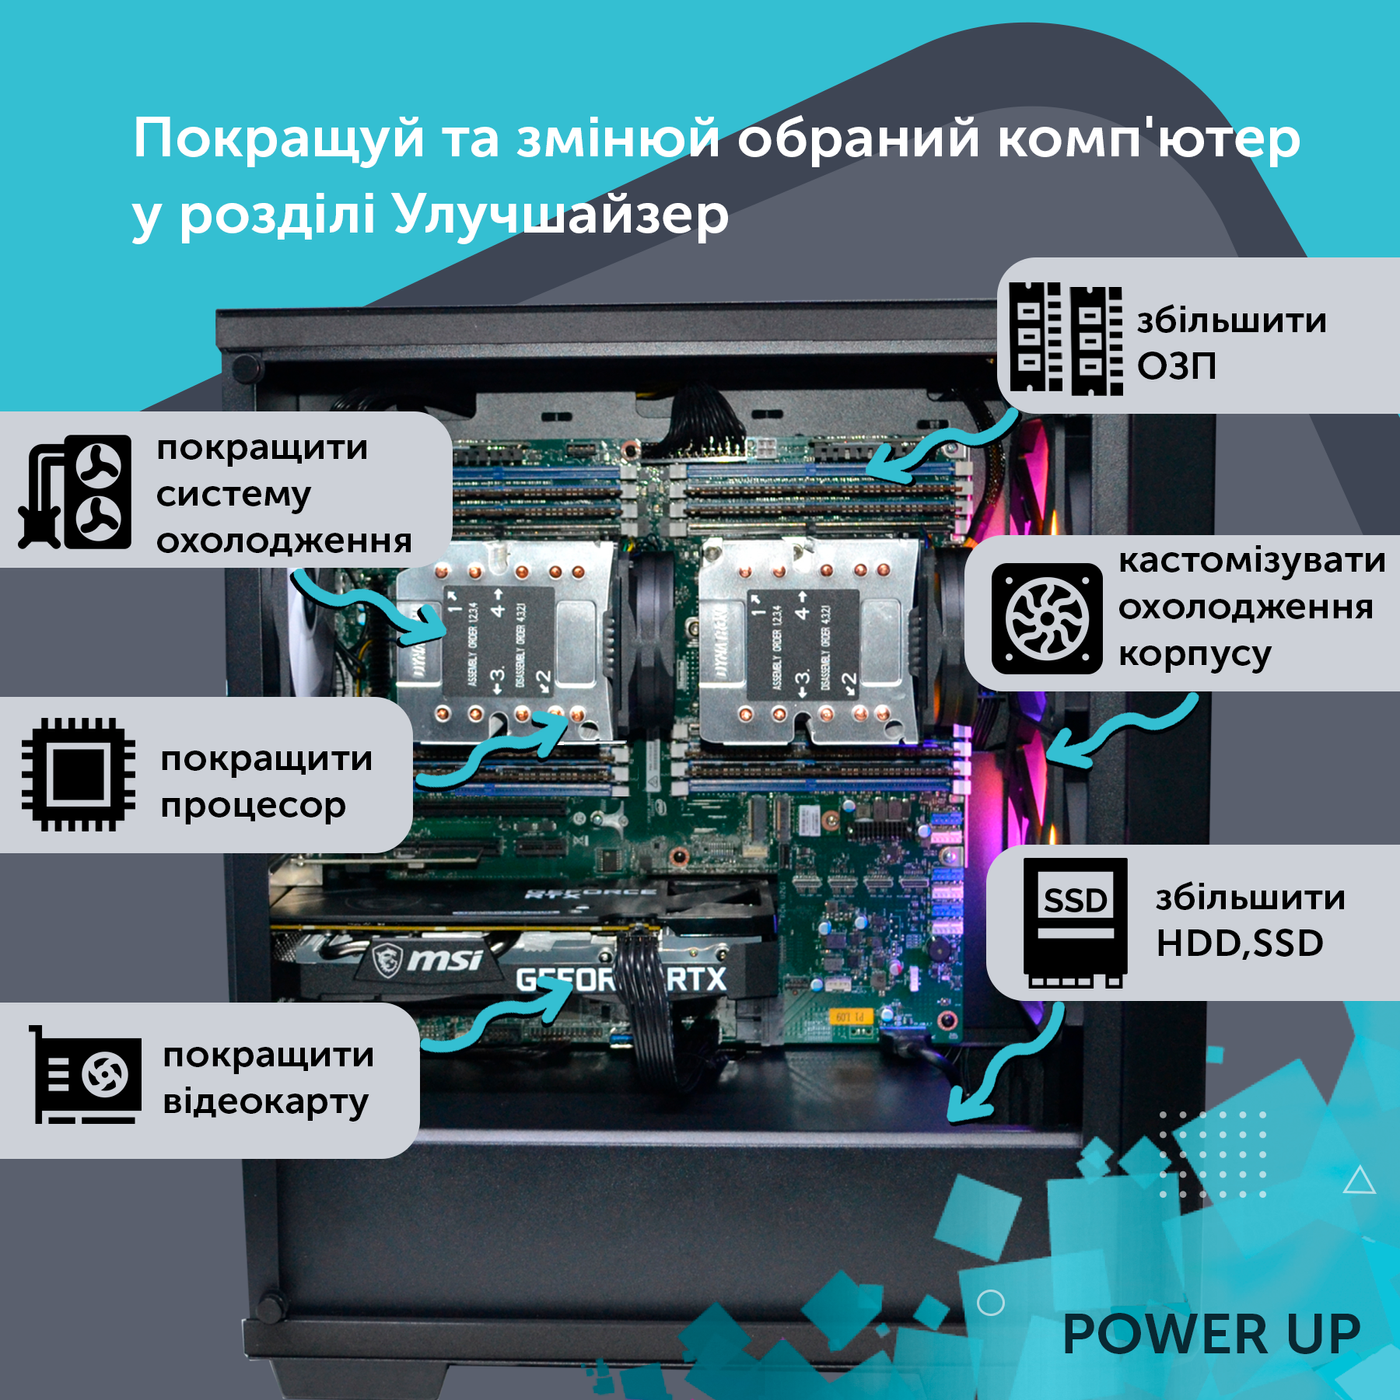 Робоча станція PowerUp Desktop #365 Ryzen 9 7950x/32 GB/SSD 512GB/GeForce RTX 4070Ti Super 16GB